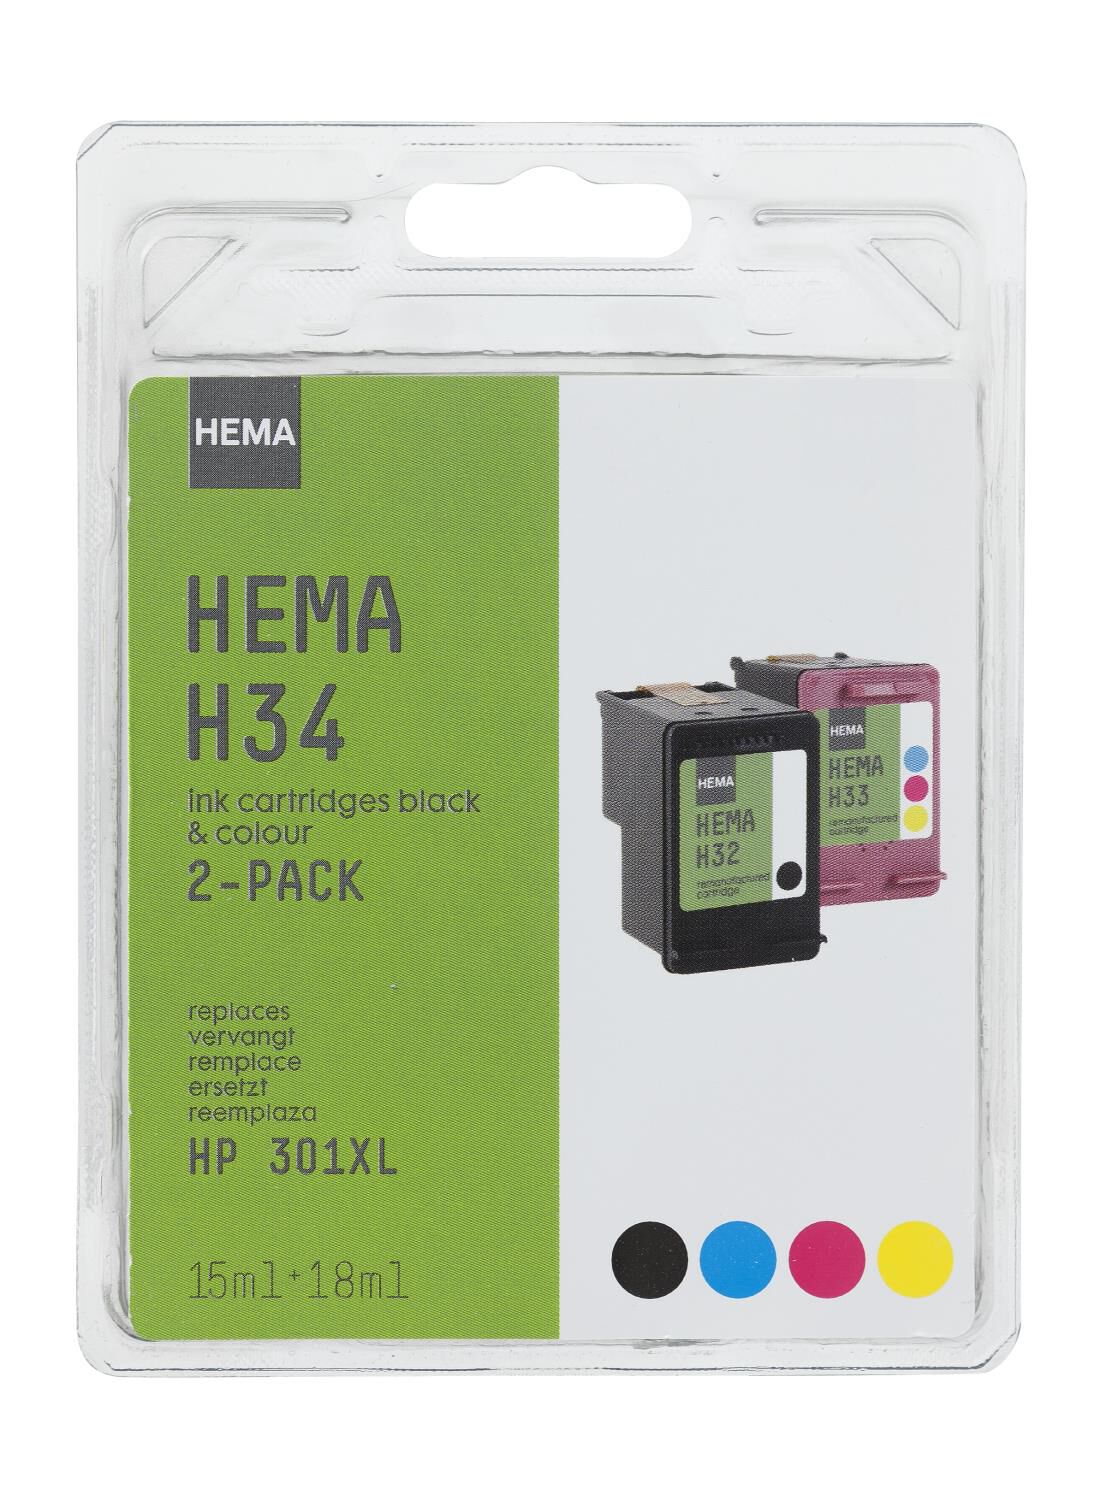 effectief Honderd jaar Ik denk dat ik ziek ben HEMA cartridge H34 voor de HP 301XL - HEMA